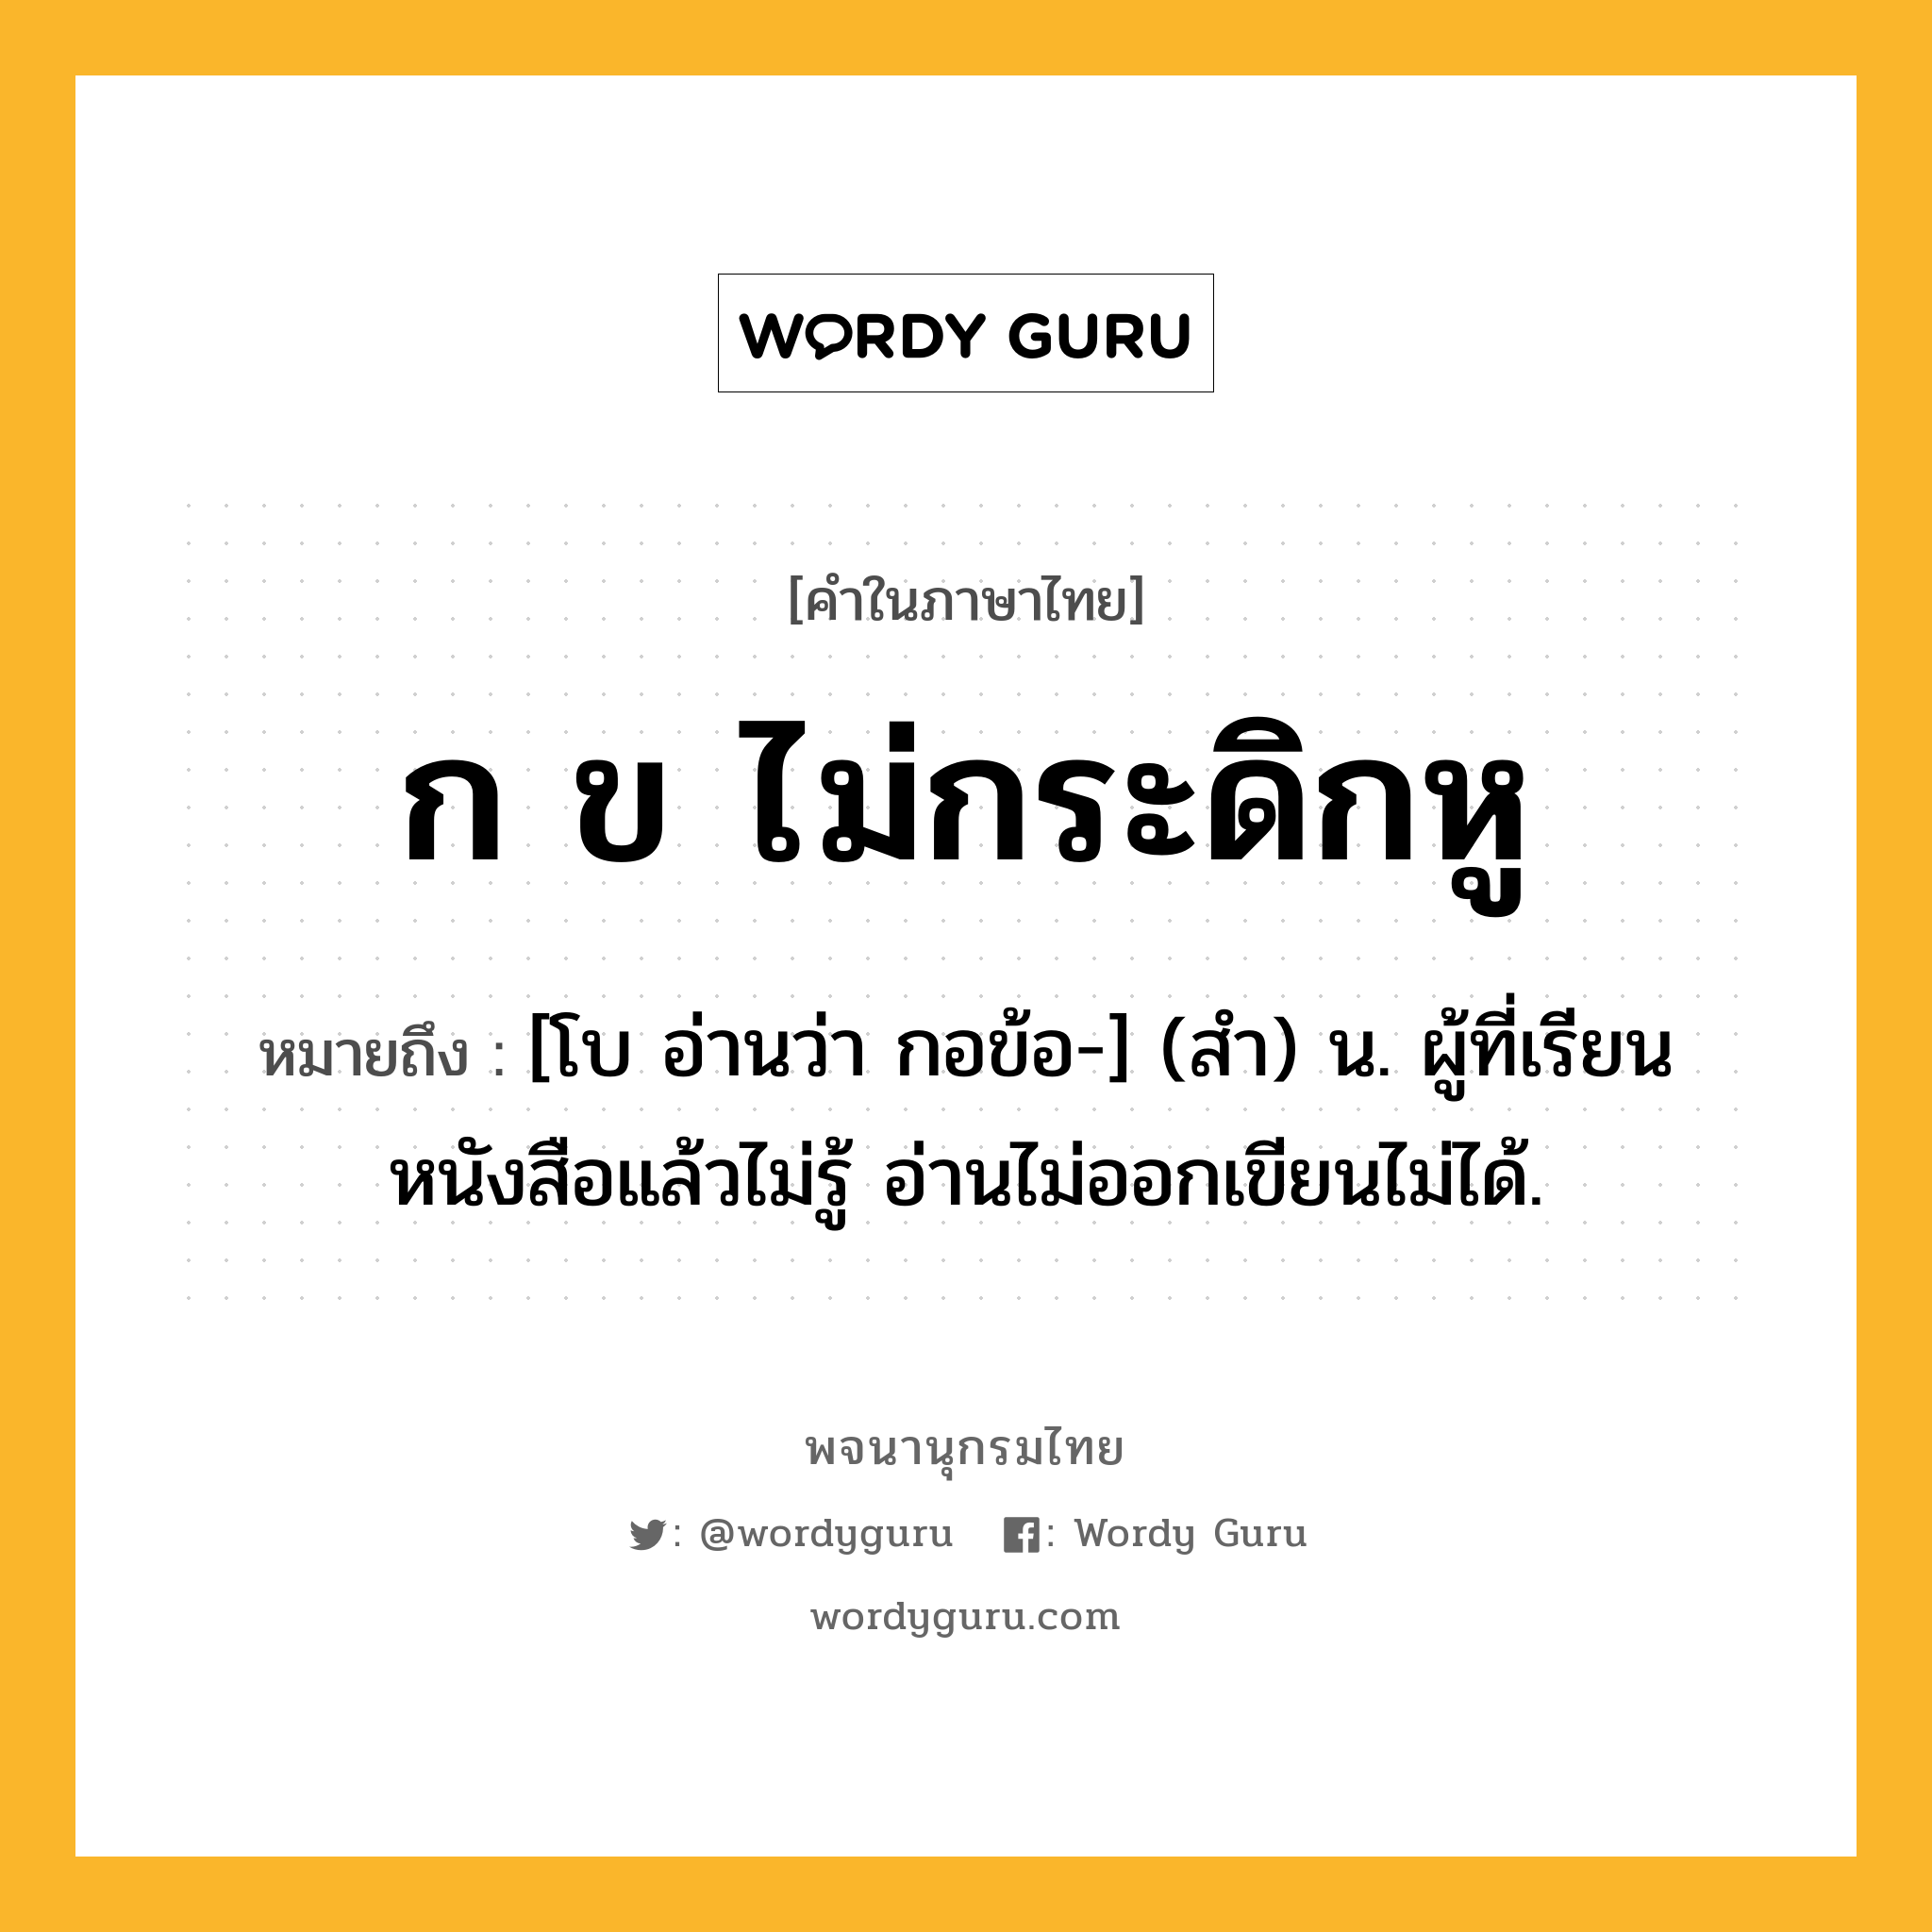 ก ข ไม่กระดิกหู ความหมาย หมายถึงอะไร?, คำในภาษาไทย ก ข ไม่กระดิกหู หมายถึง [โบ อ่านว่า กอข้อ-] (สํา) น. ผู้ที่เรียนหนังสือแล้วไม่รู้ อ่านไม่ออกเขียนไม่ได้.